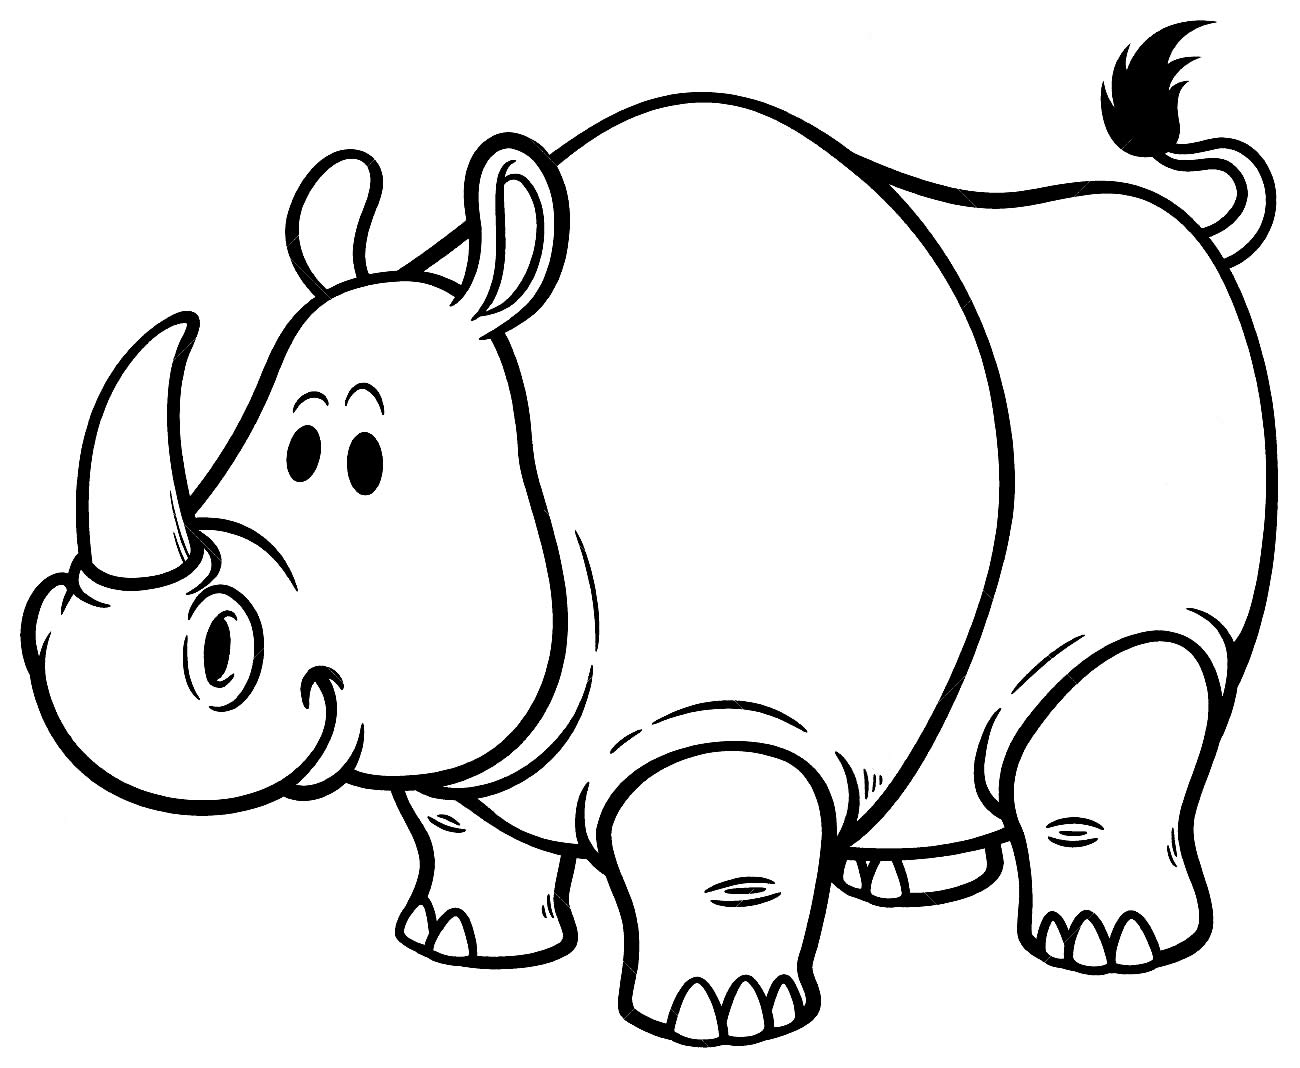 Rinoceronte раскраска для детей